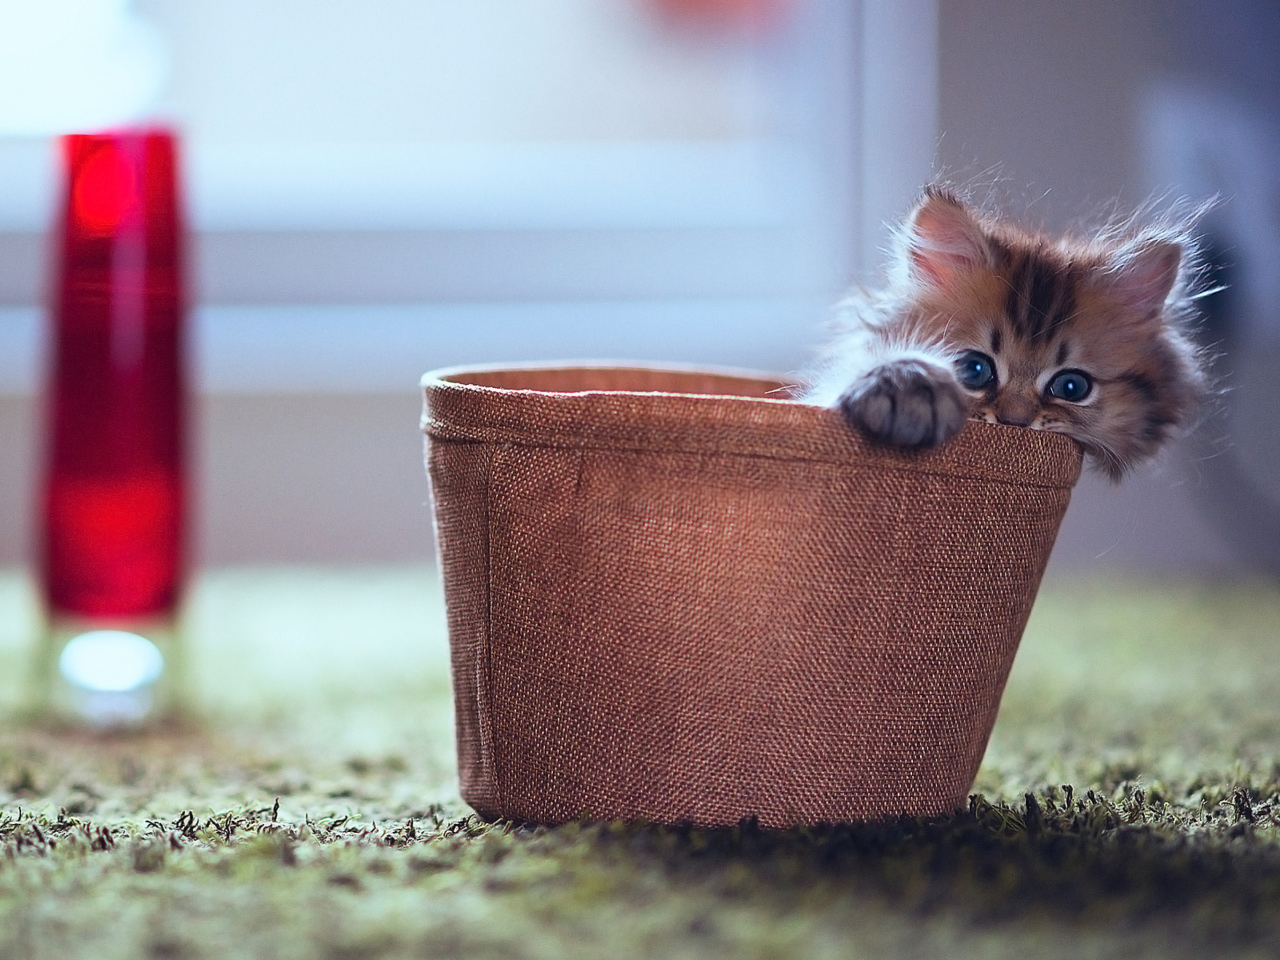 Little Kitten In Basket wallpaper 1280x960